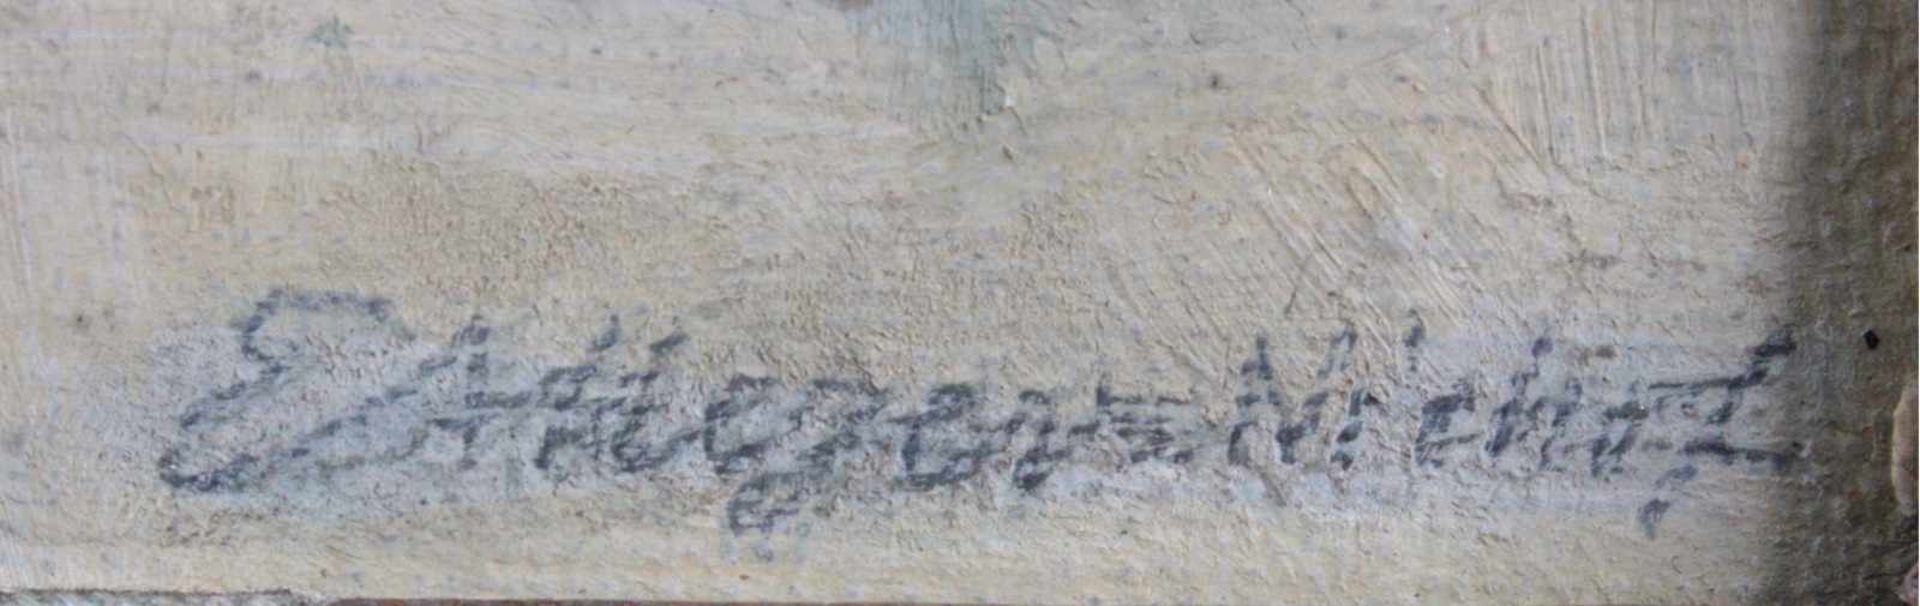 Dünen in NorderneyÖl auf Pappe gemalt, unte rechts signiert: Niehof, gerahmt,ca. 17 x 23 cm - Bild 3 aus 3